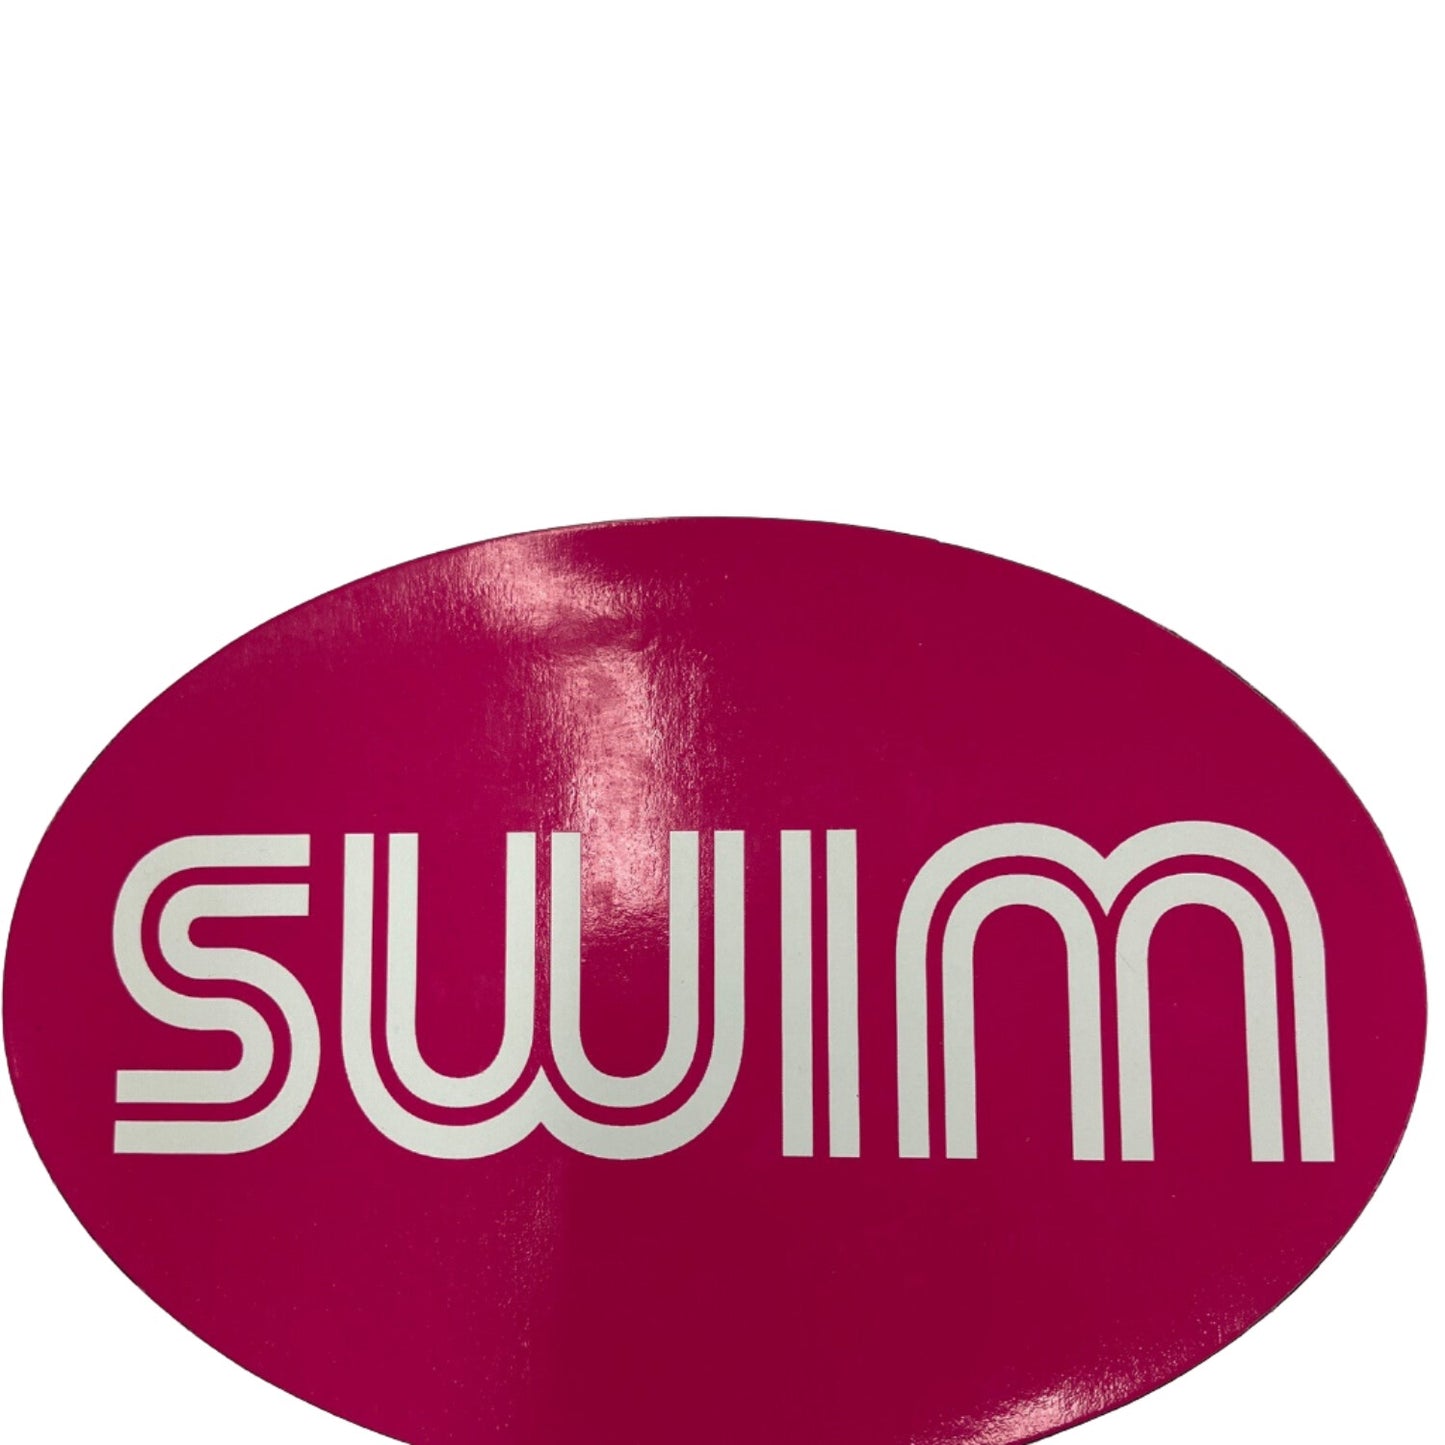 Swim Magnet